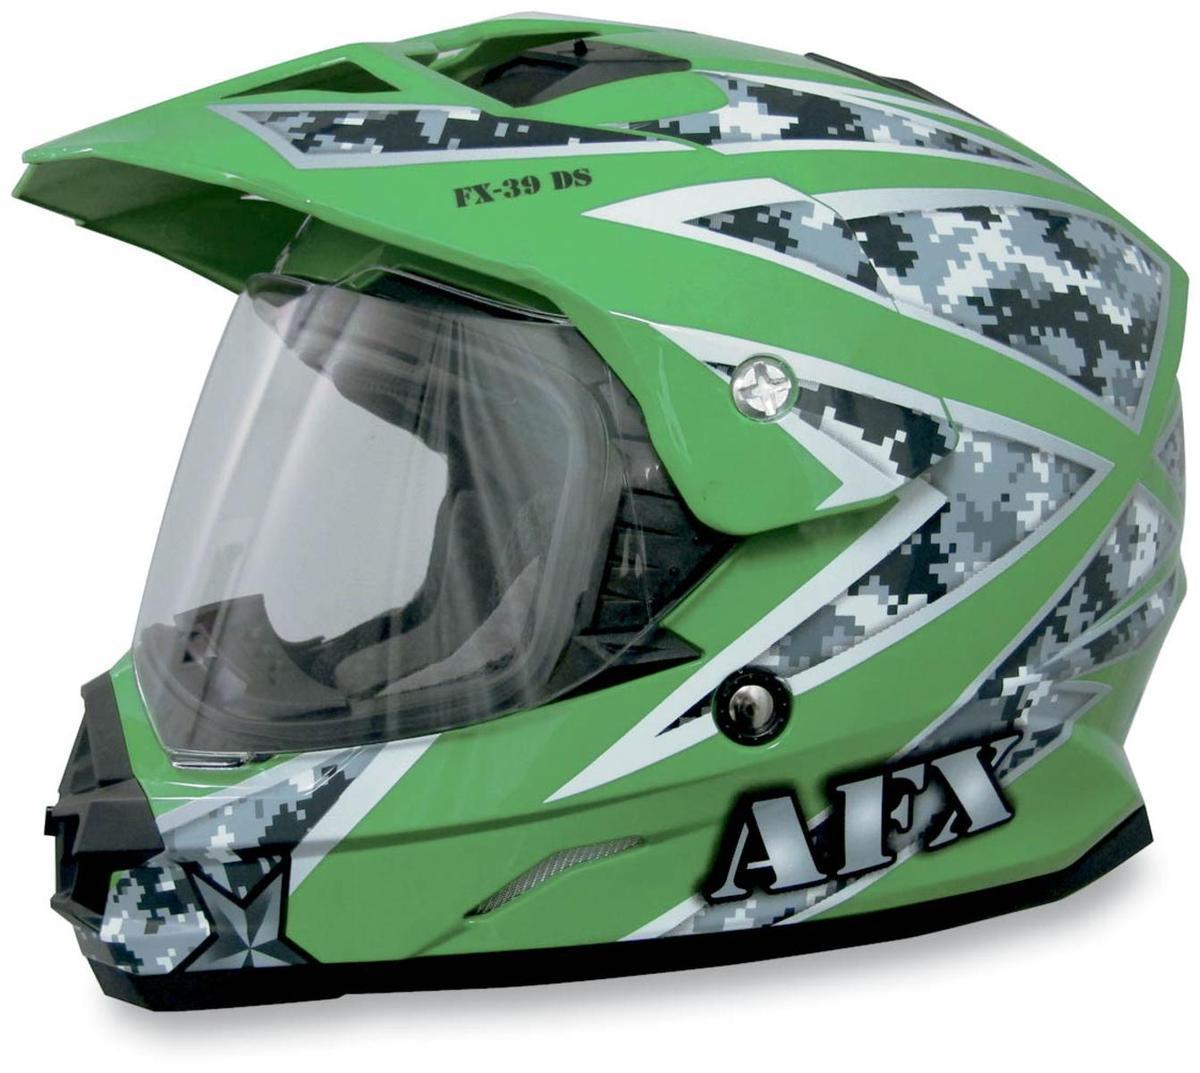 Afx fx-39 dual sport helmet urban green